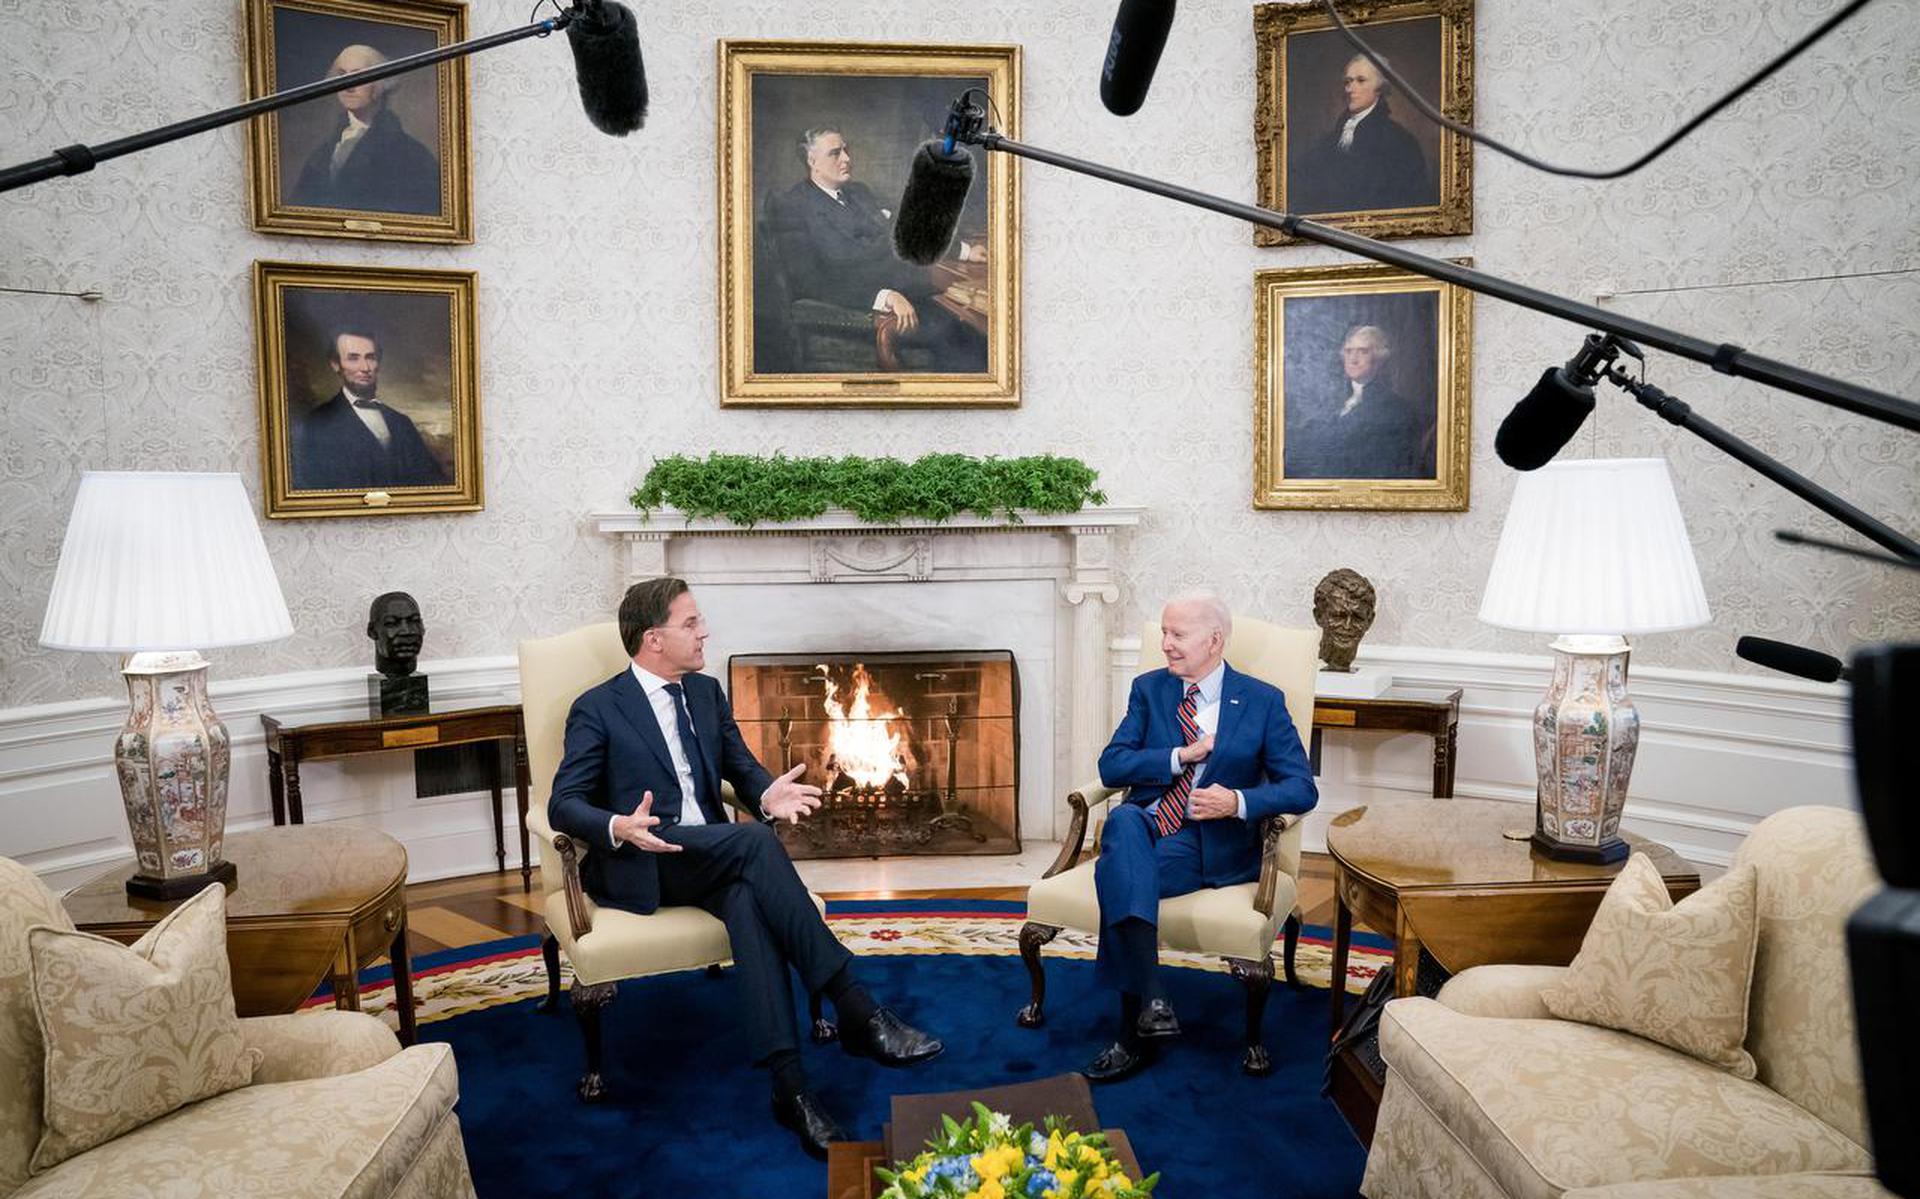 WASHINGTON - Premier Mark Rutte tijdens zijn ontmoeting met de Amerikaanse president Joe Biden, in het Witte Huis. Tijdens het bezoek zal onder meer worden gesproken over de coordinatie van de steun aan Oekraine. Ook komt de verdere samenwerking op het terrein van defensie en veiligheid aan bod en wordt er gesproken over de verdere versteviging van de bilaterale handelsrelatie tussen Nederland en de Verenigde Staten. ANP BART MAAT